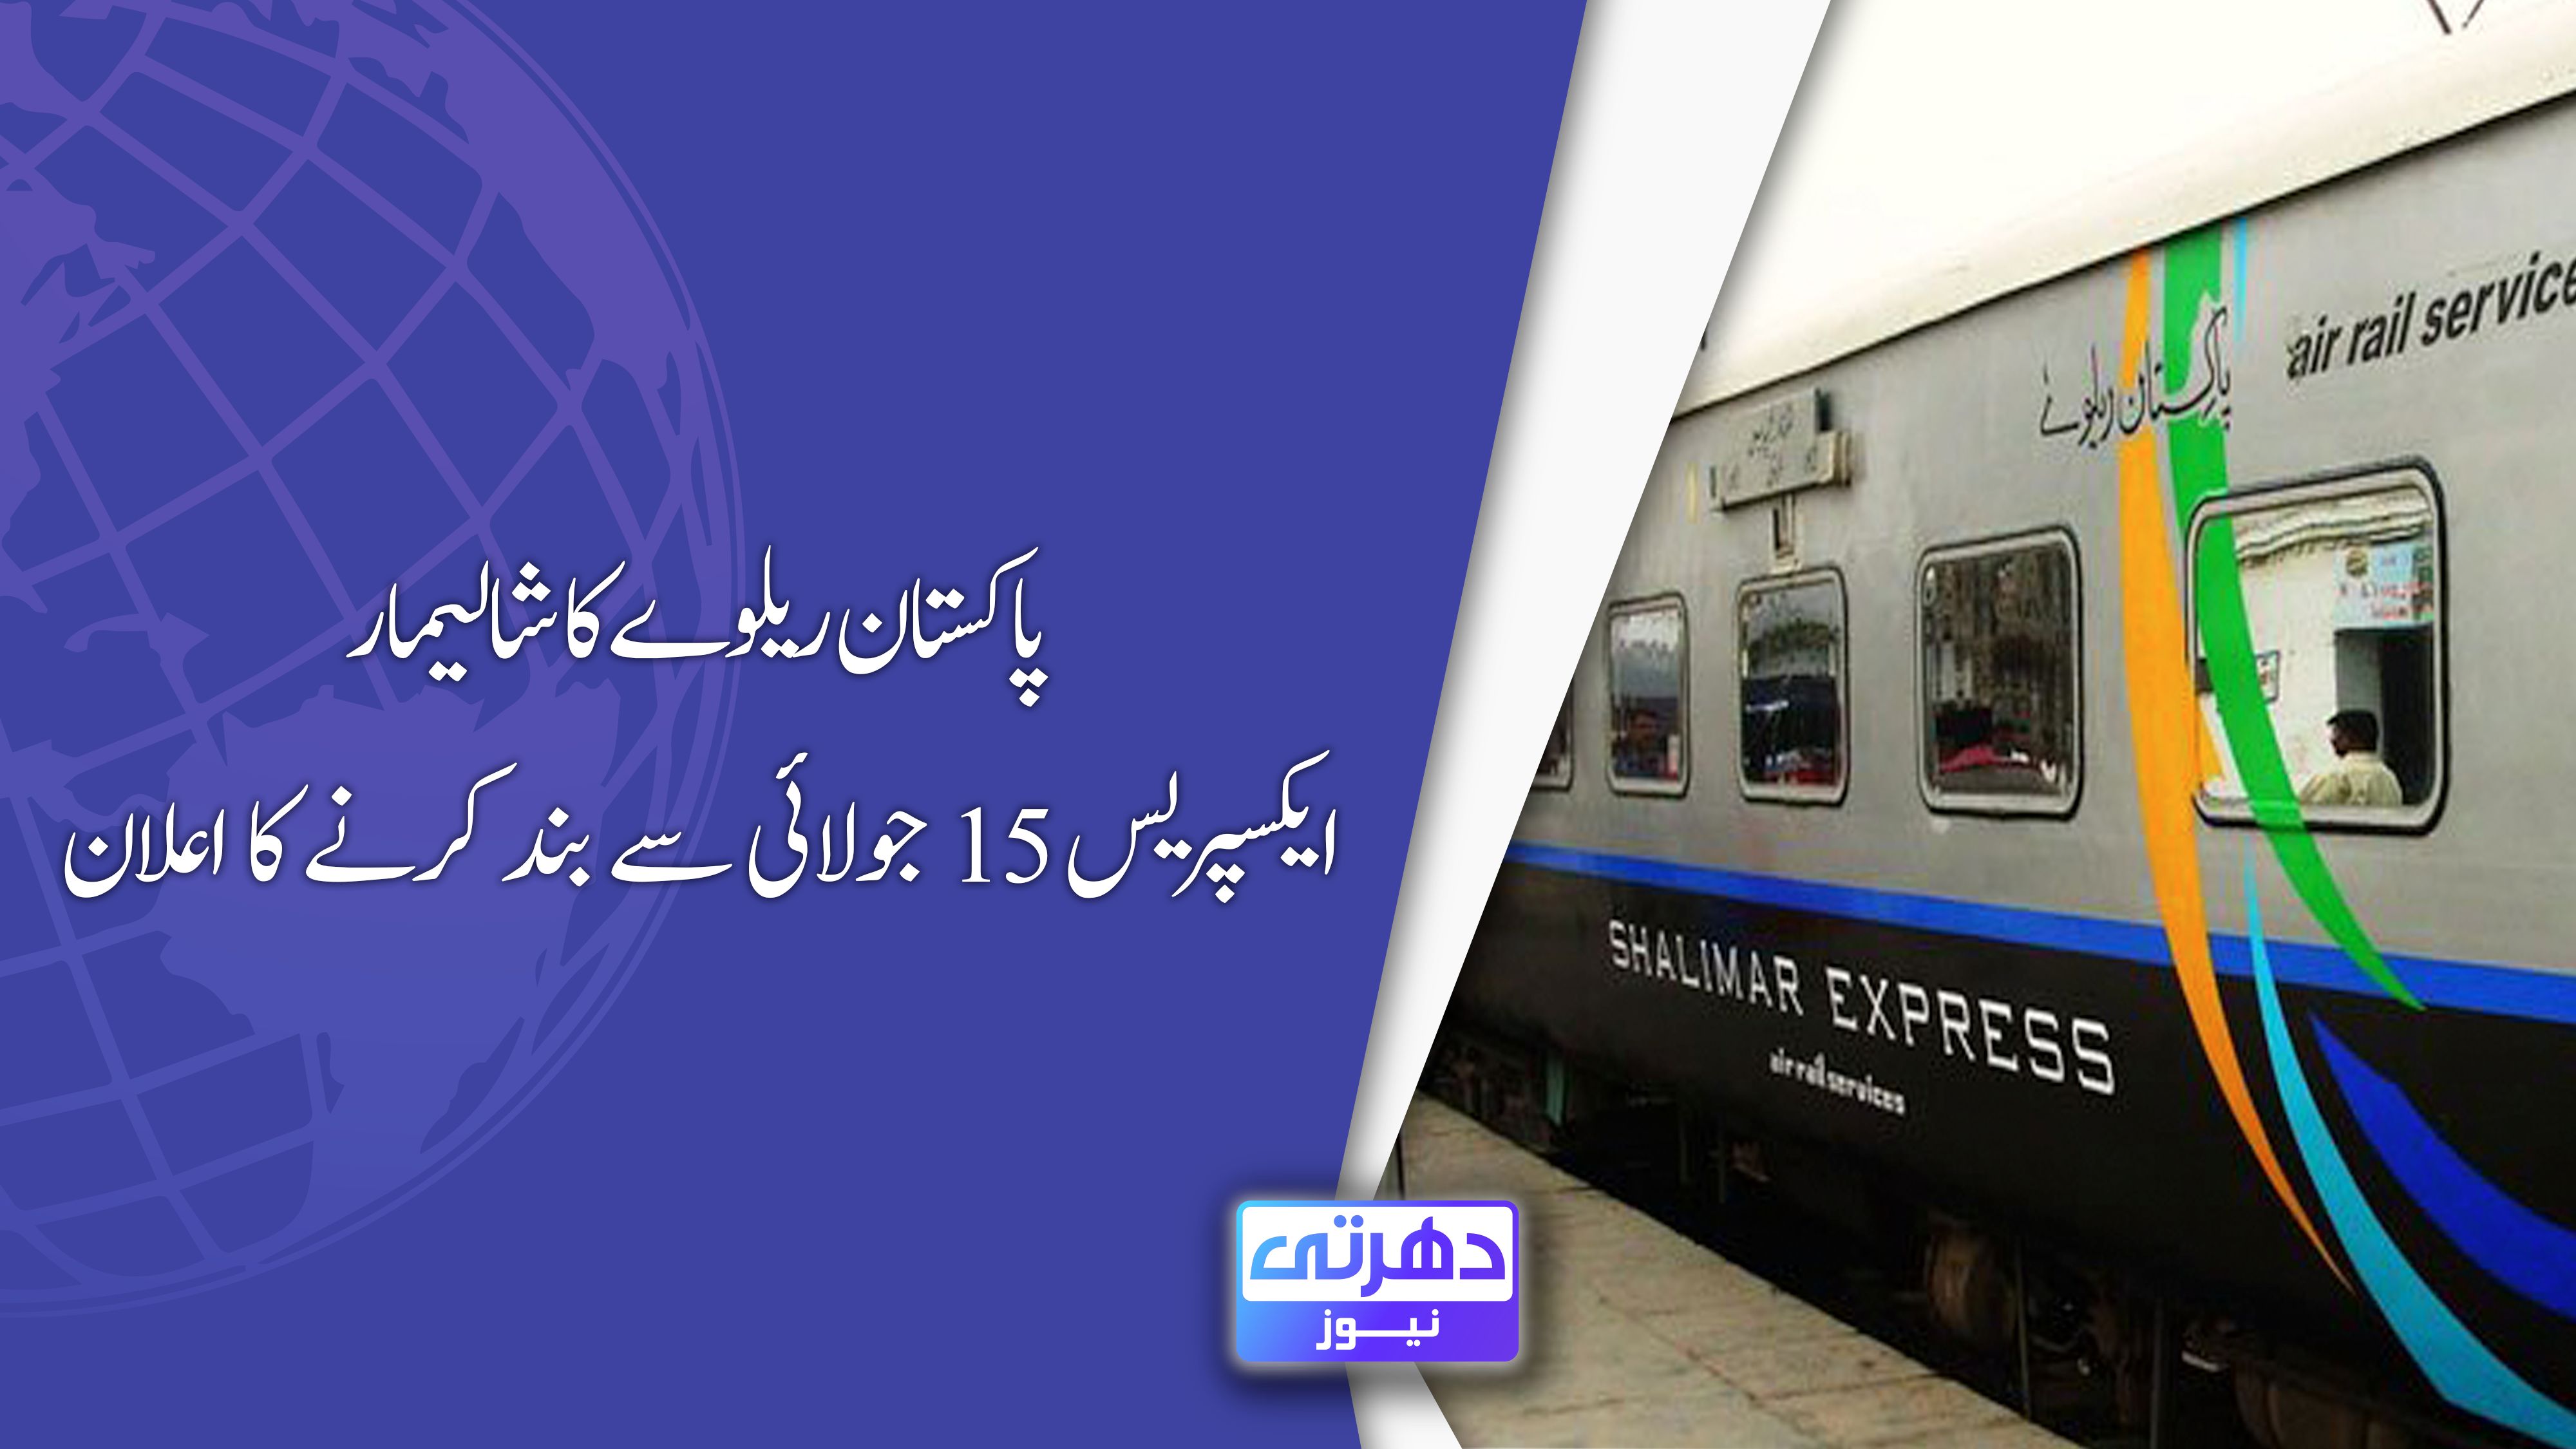 پاکستان ریلوے کا شالیمار ایکسپریس 15 جولائی سے بند کرنے کا اعلان